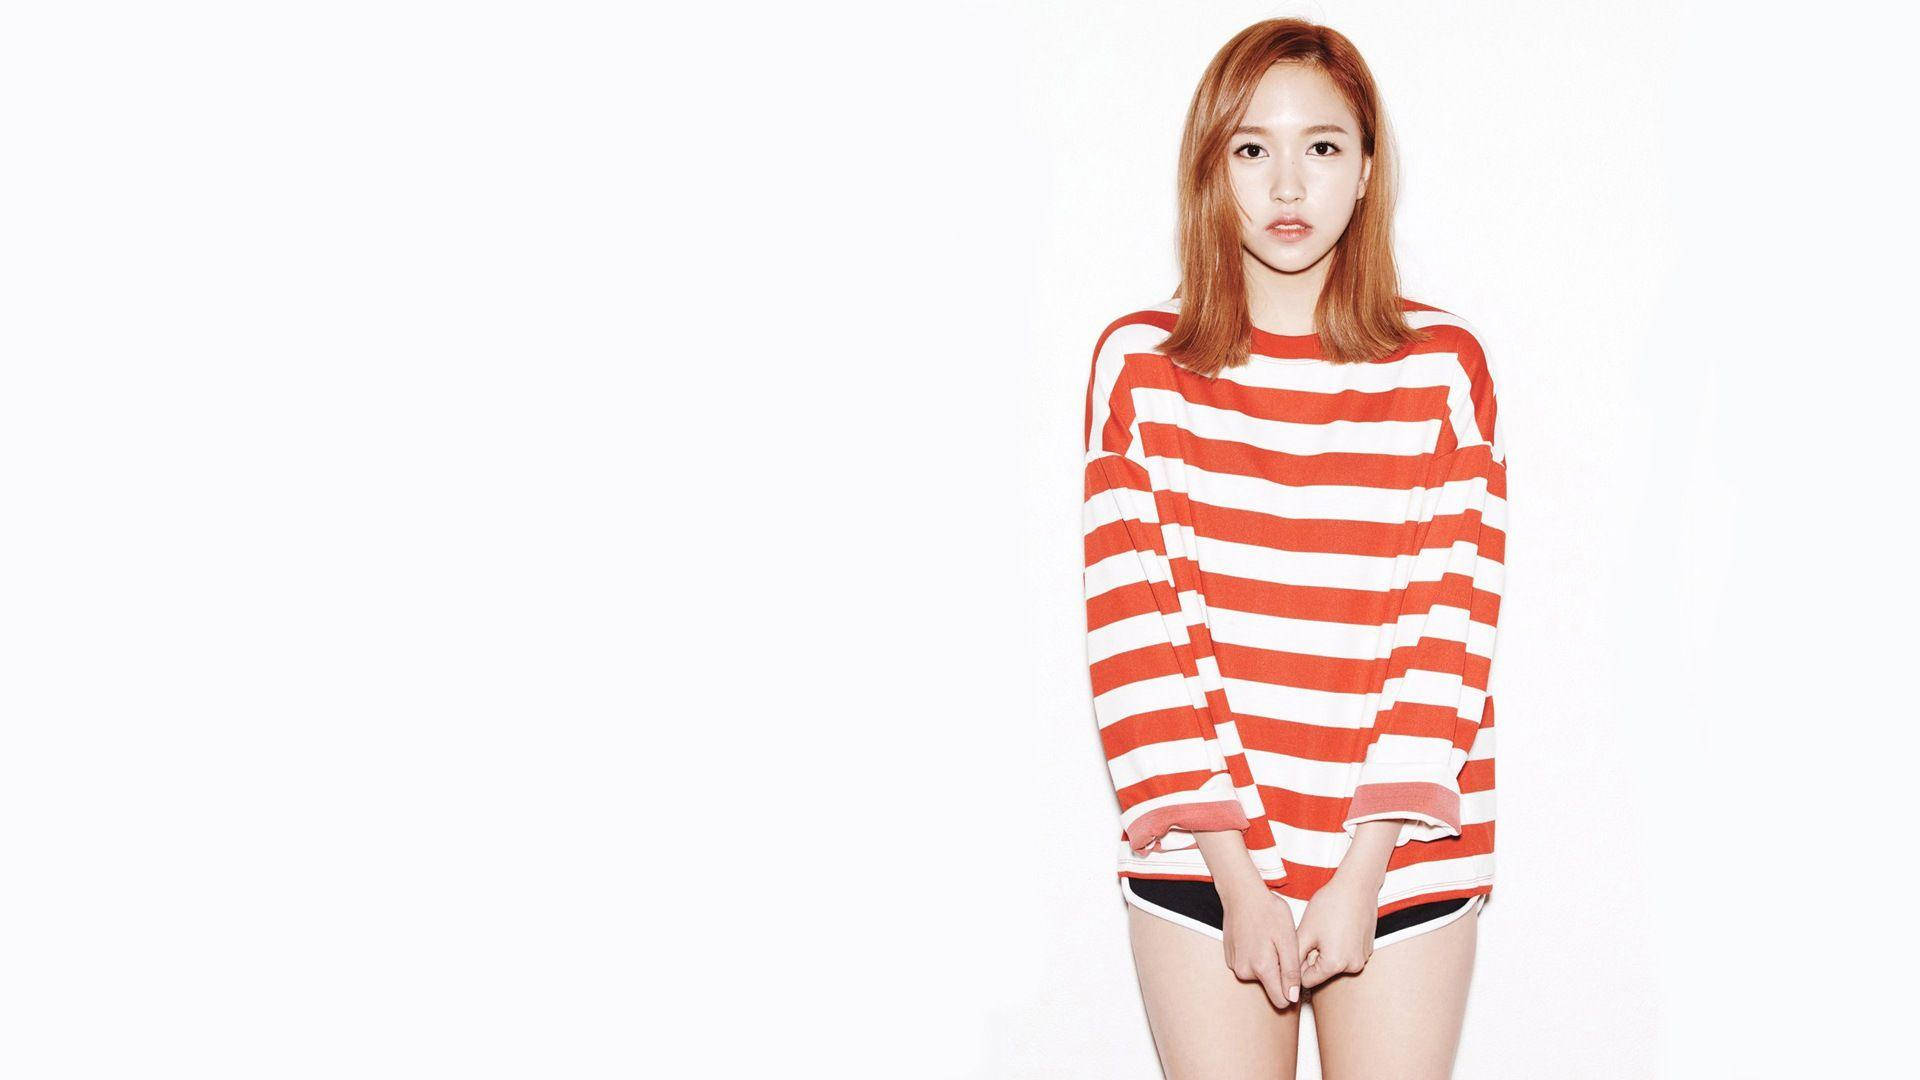 Twice Member Mina In Stripes